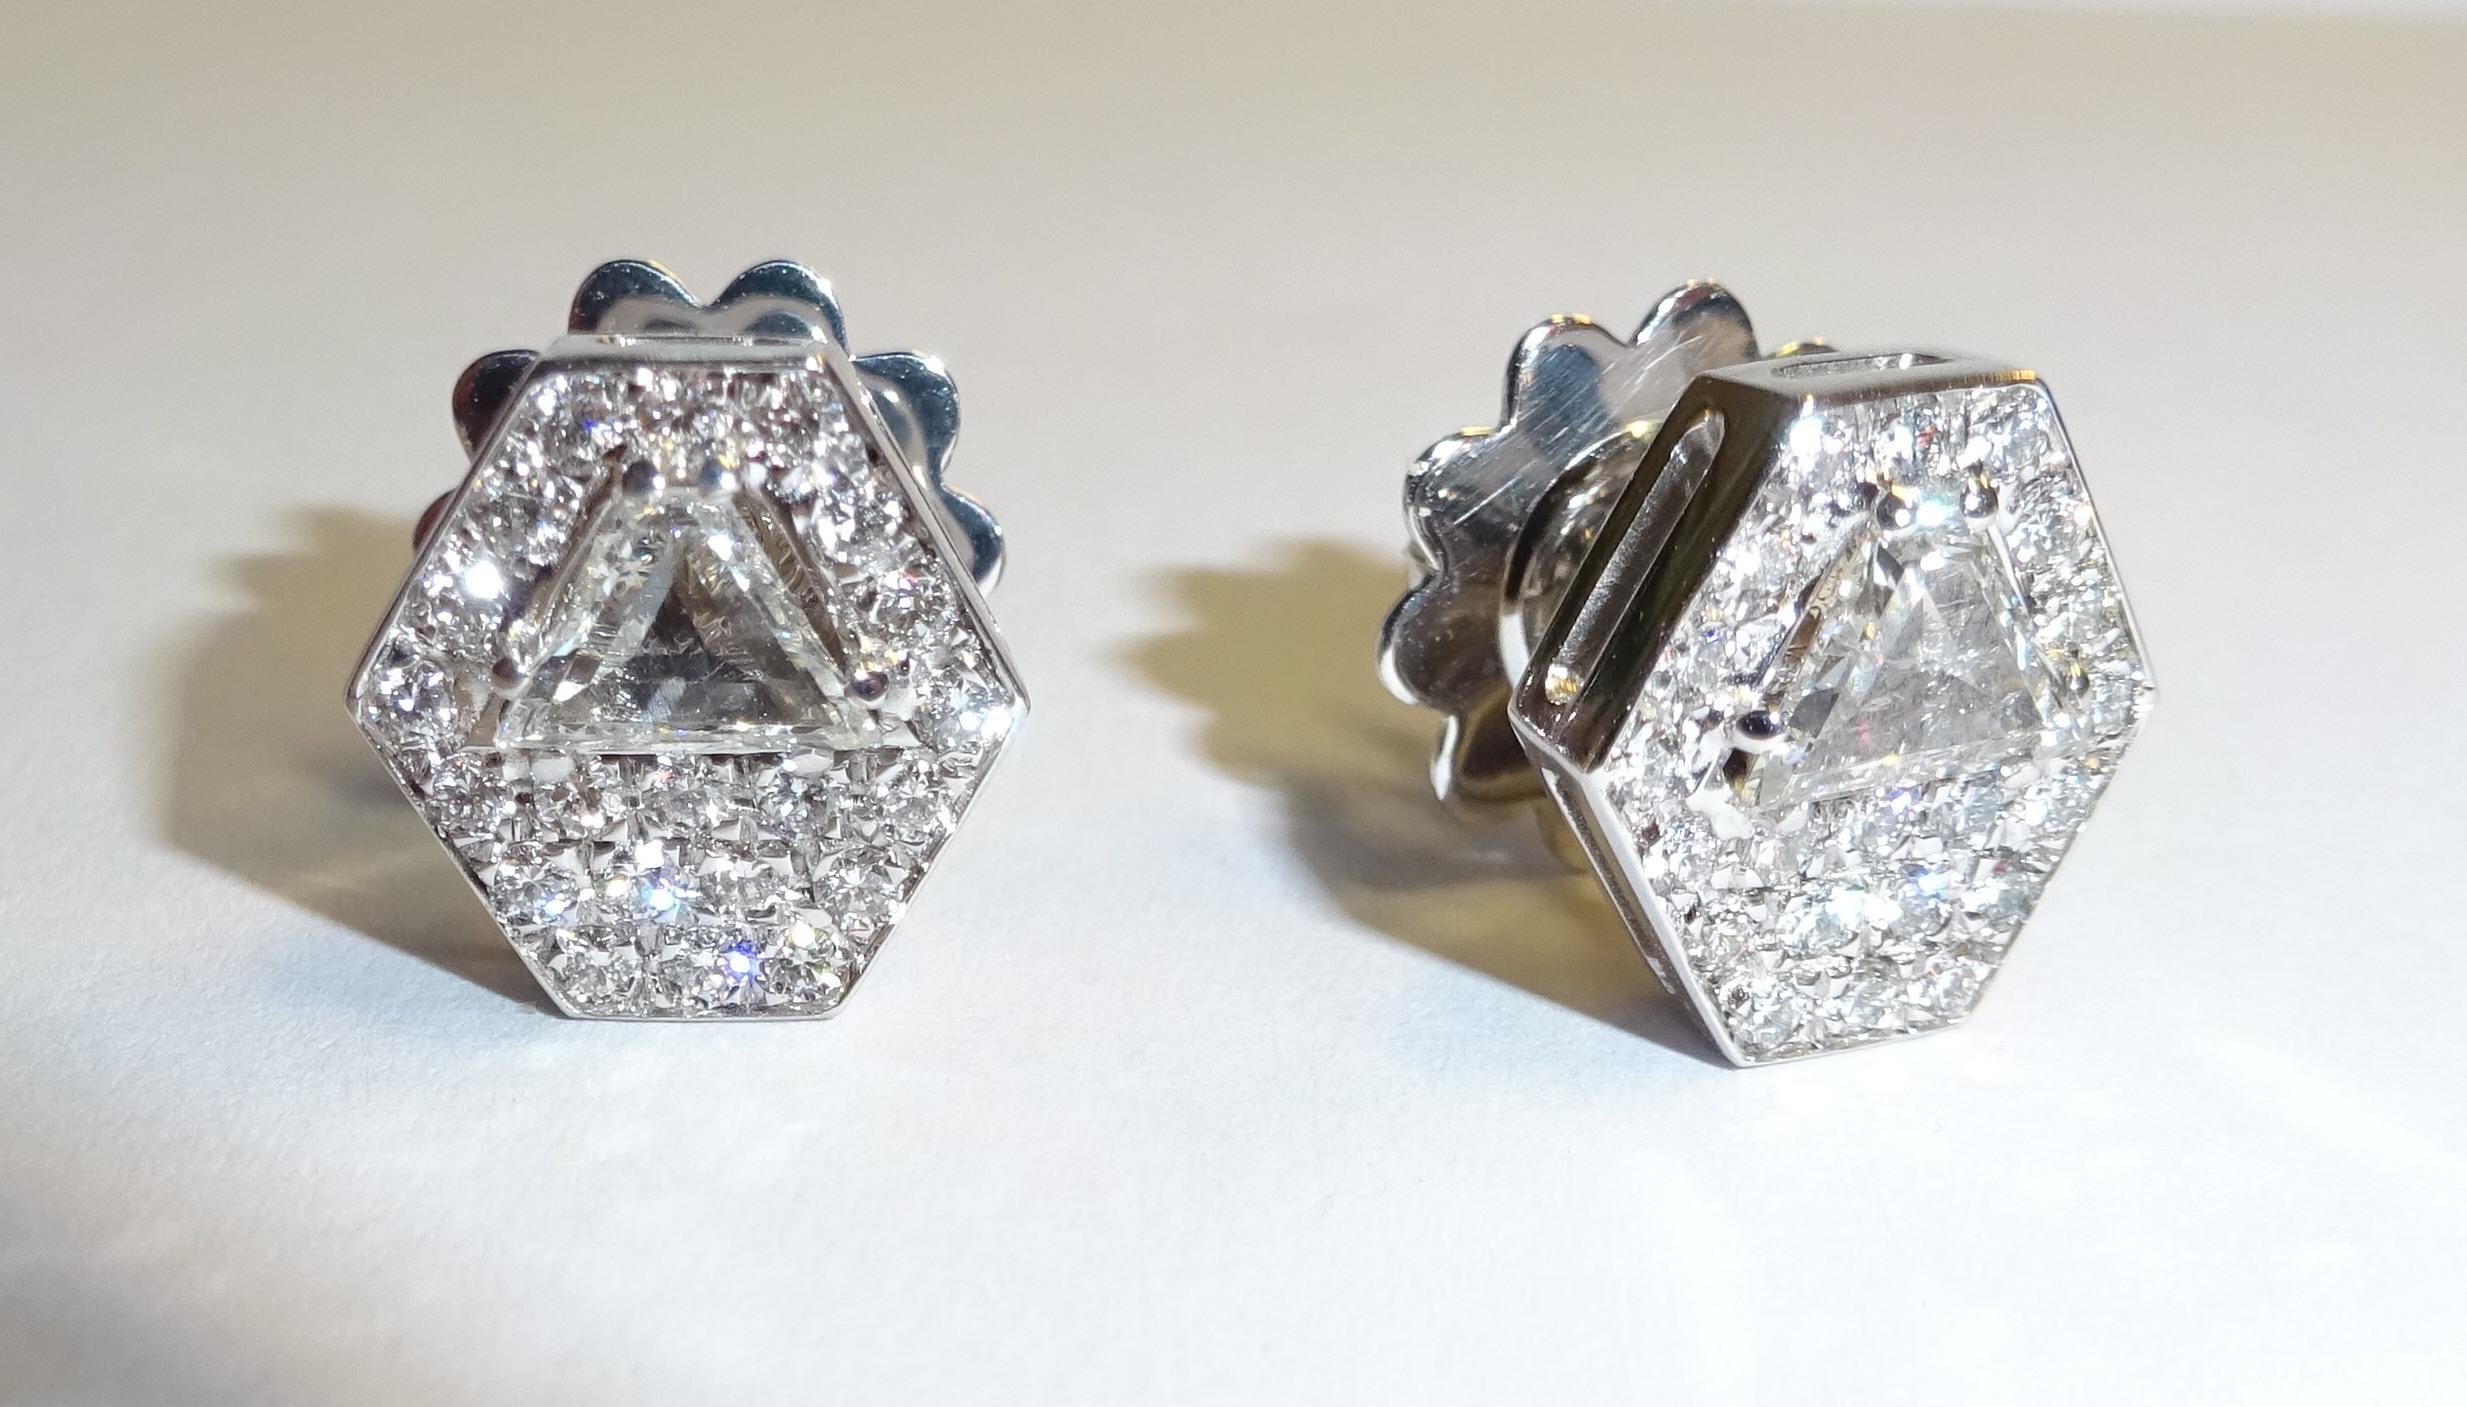 18 Karat Weißgold Diamant  Ohrringe

42 Diamanten 0,39 Karat
2 Diam. Falle 0,59 Karat



Gianni Lazzaro wurde 1974 gegründet und ist ein Schmuckunternehmen in Familienbesitz mit Sitz in Düsseldorf, Deutschland.
Obwohl Gianni Lazzaro seine Wurzeln in